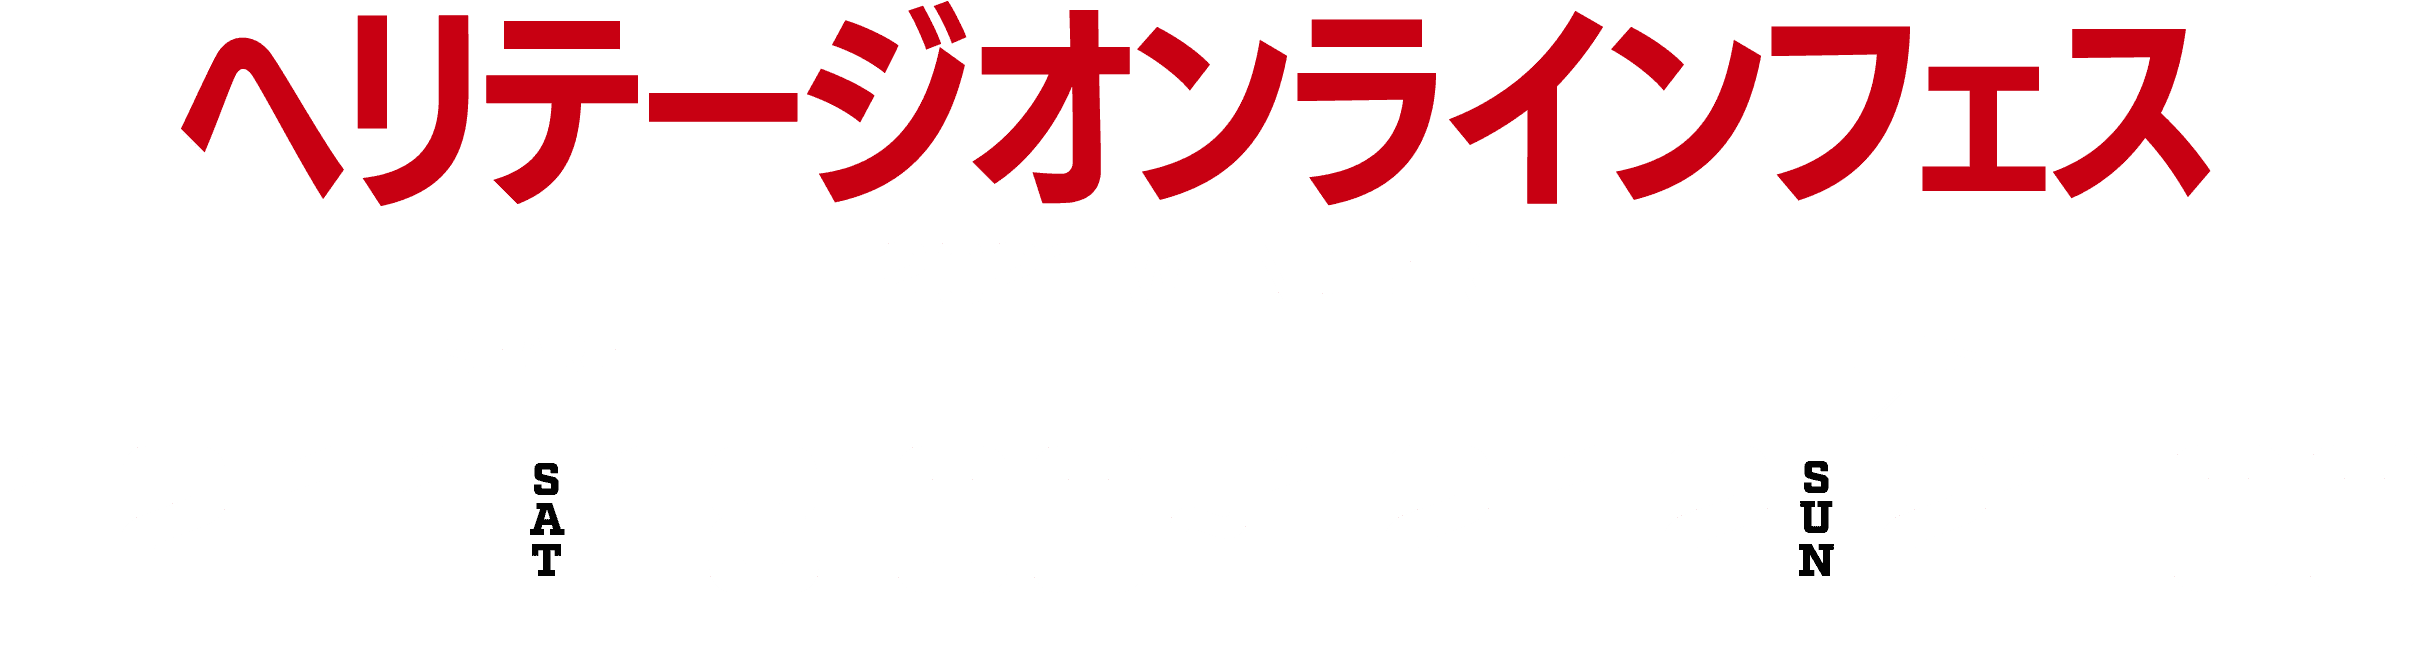 ヘリテージオンラインフェス | オンライン開催！2DAYS 2021年12月11日（土）18:00 ～ 12日（日）21:00